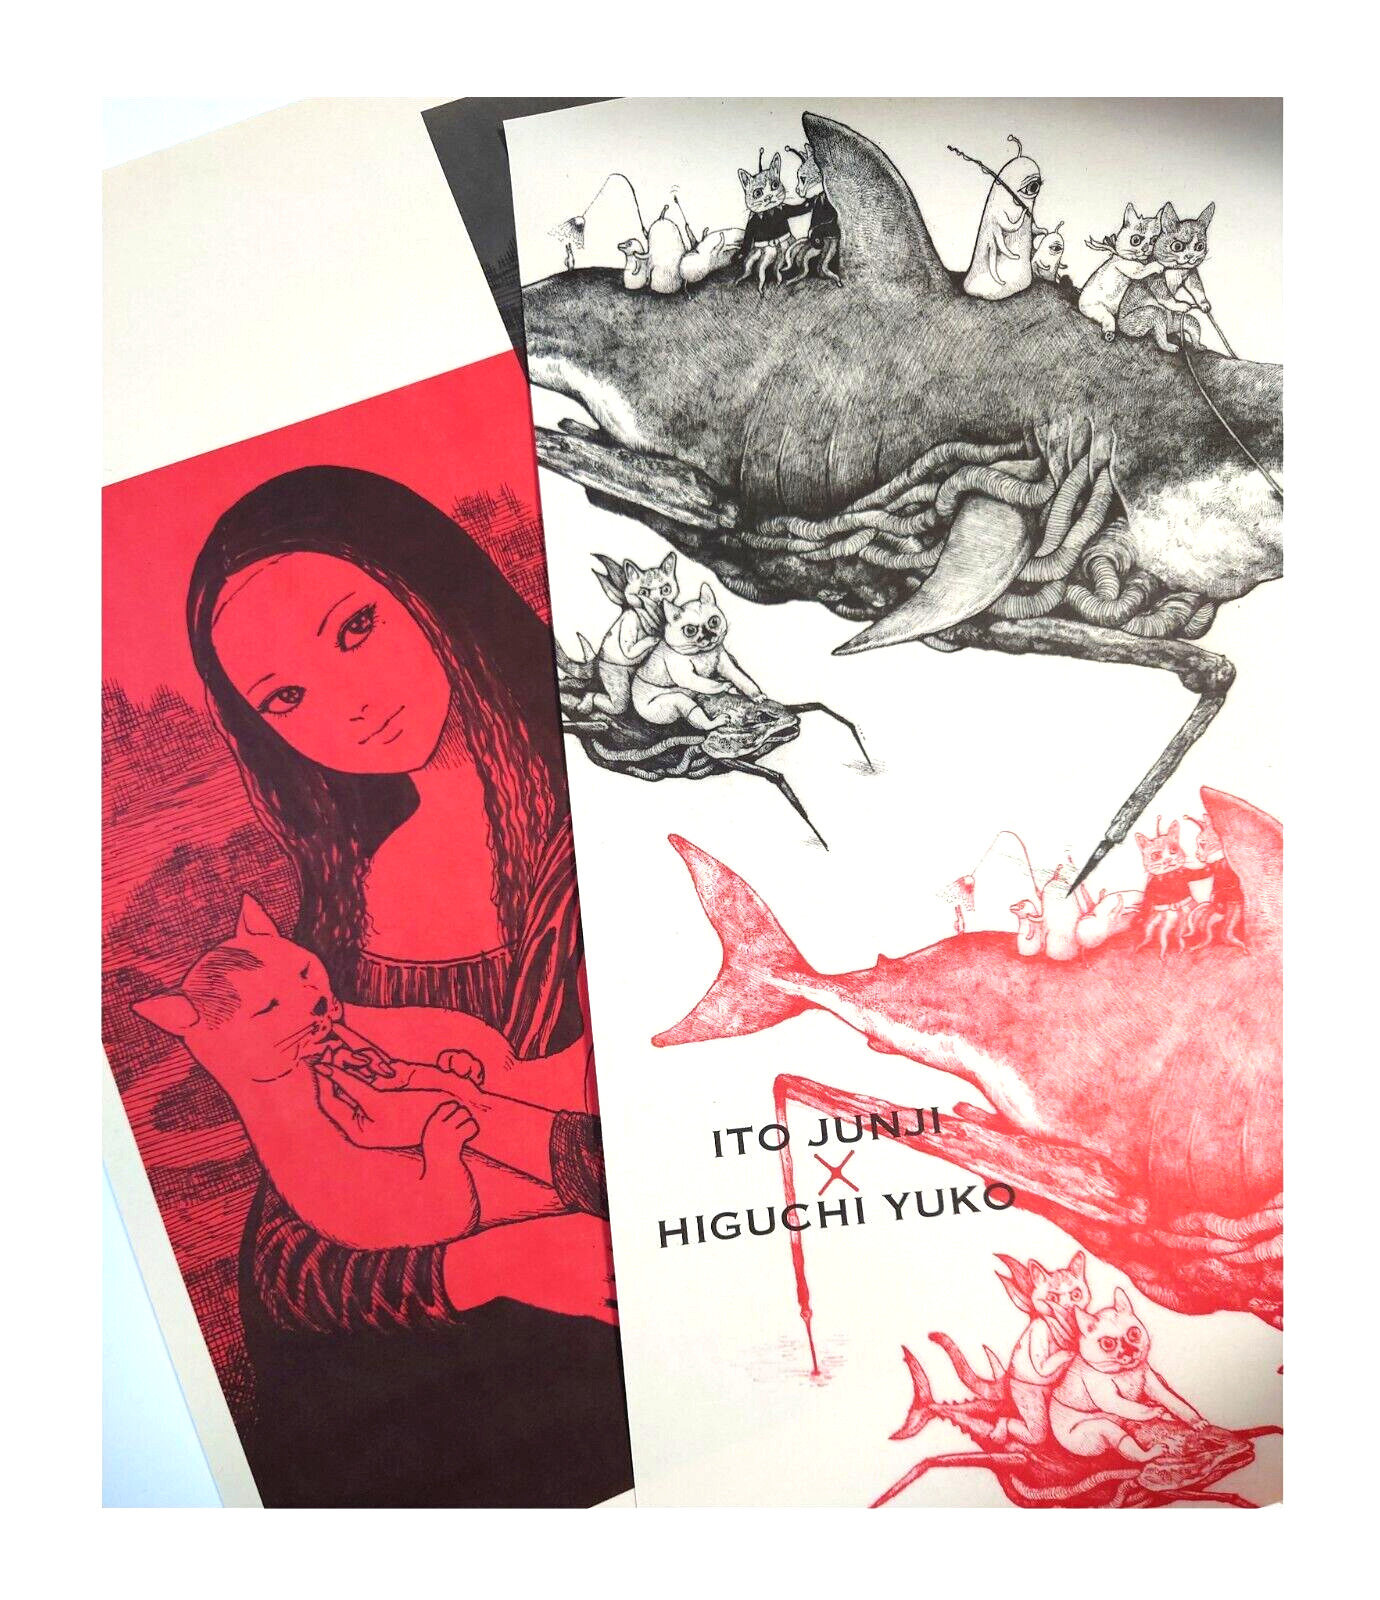 Higuchi Yuko ✕ Ito Junji homage exhibition ヒグチユウコ 伊藤潤二 2 posters 364 x 515mm New